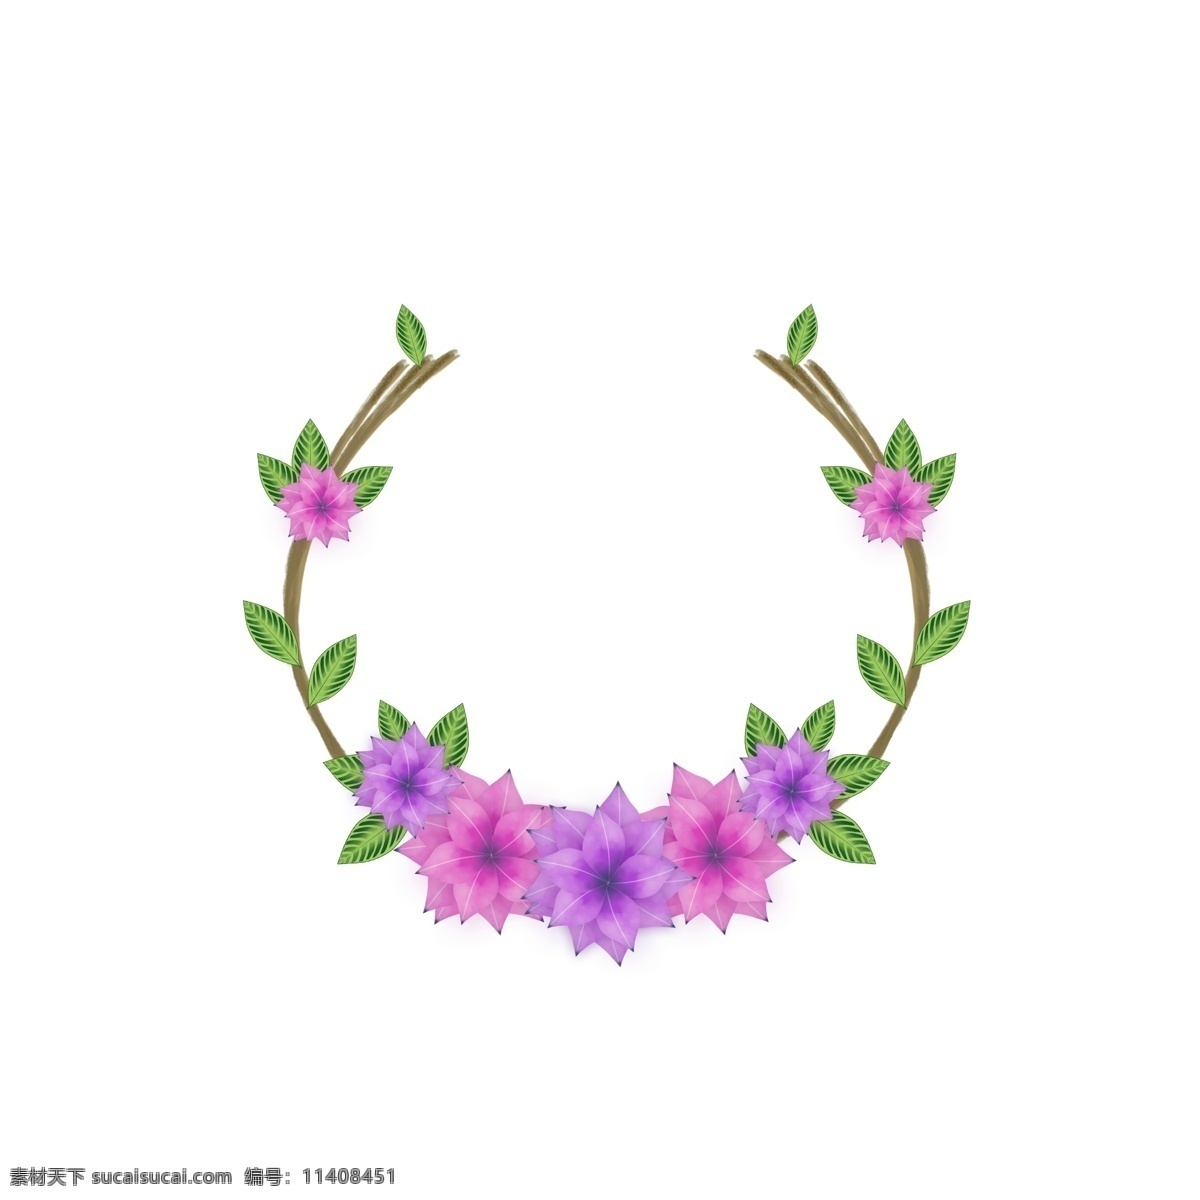 精致 手绘 水墨 纹理 u 型 花卉 植物 边框 元素 花朵 叶子 藤条 水彩 水墨纹理 u型